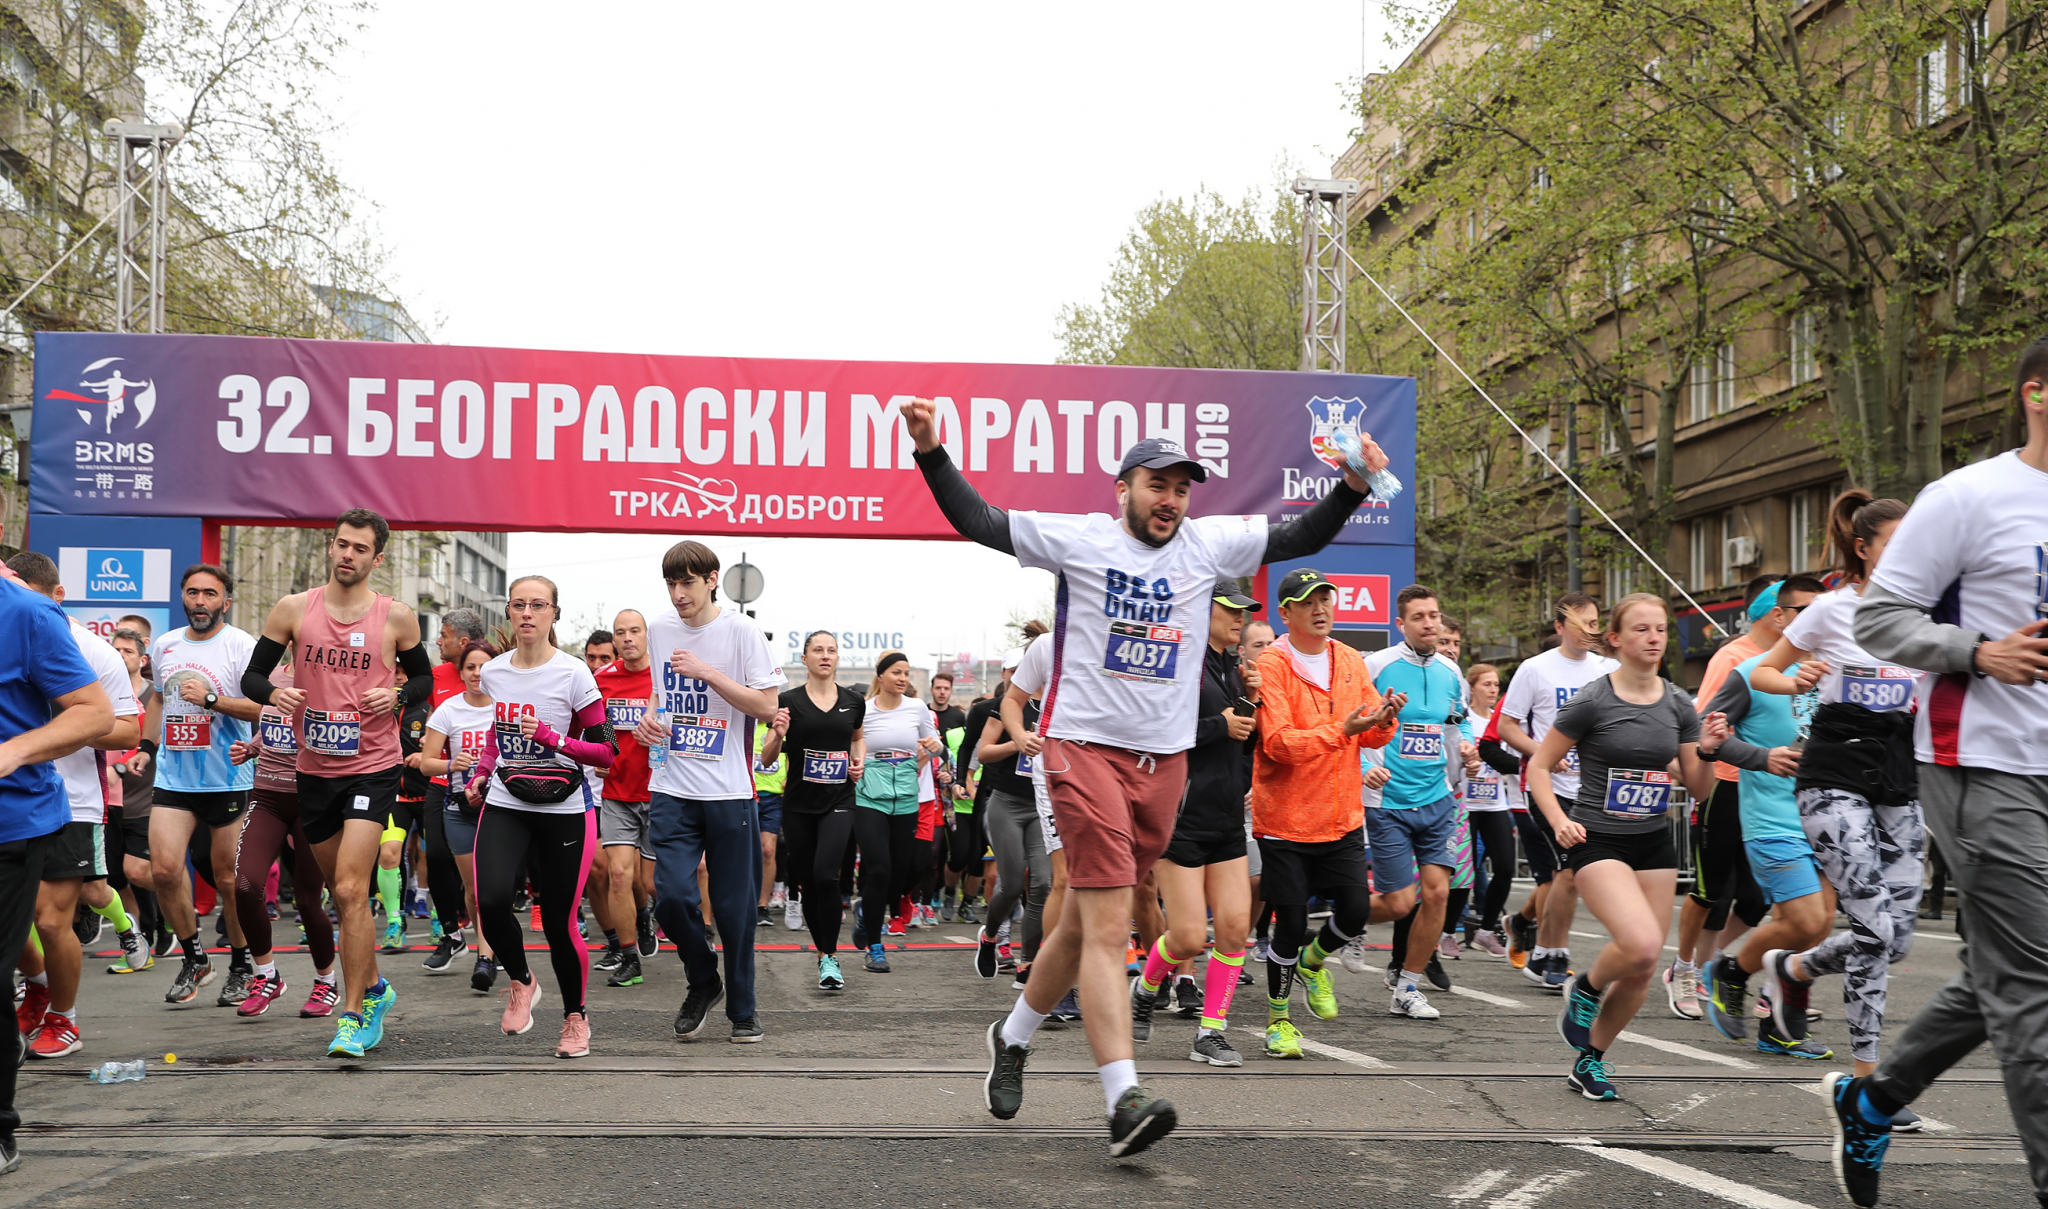 34. Beogradski maraton - BEZ BARIJERA! BEZBEDAN I ODGOVORAN!